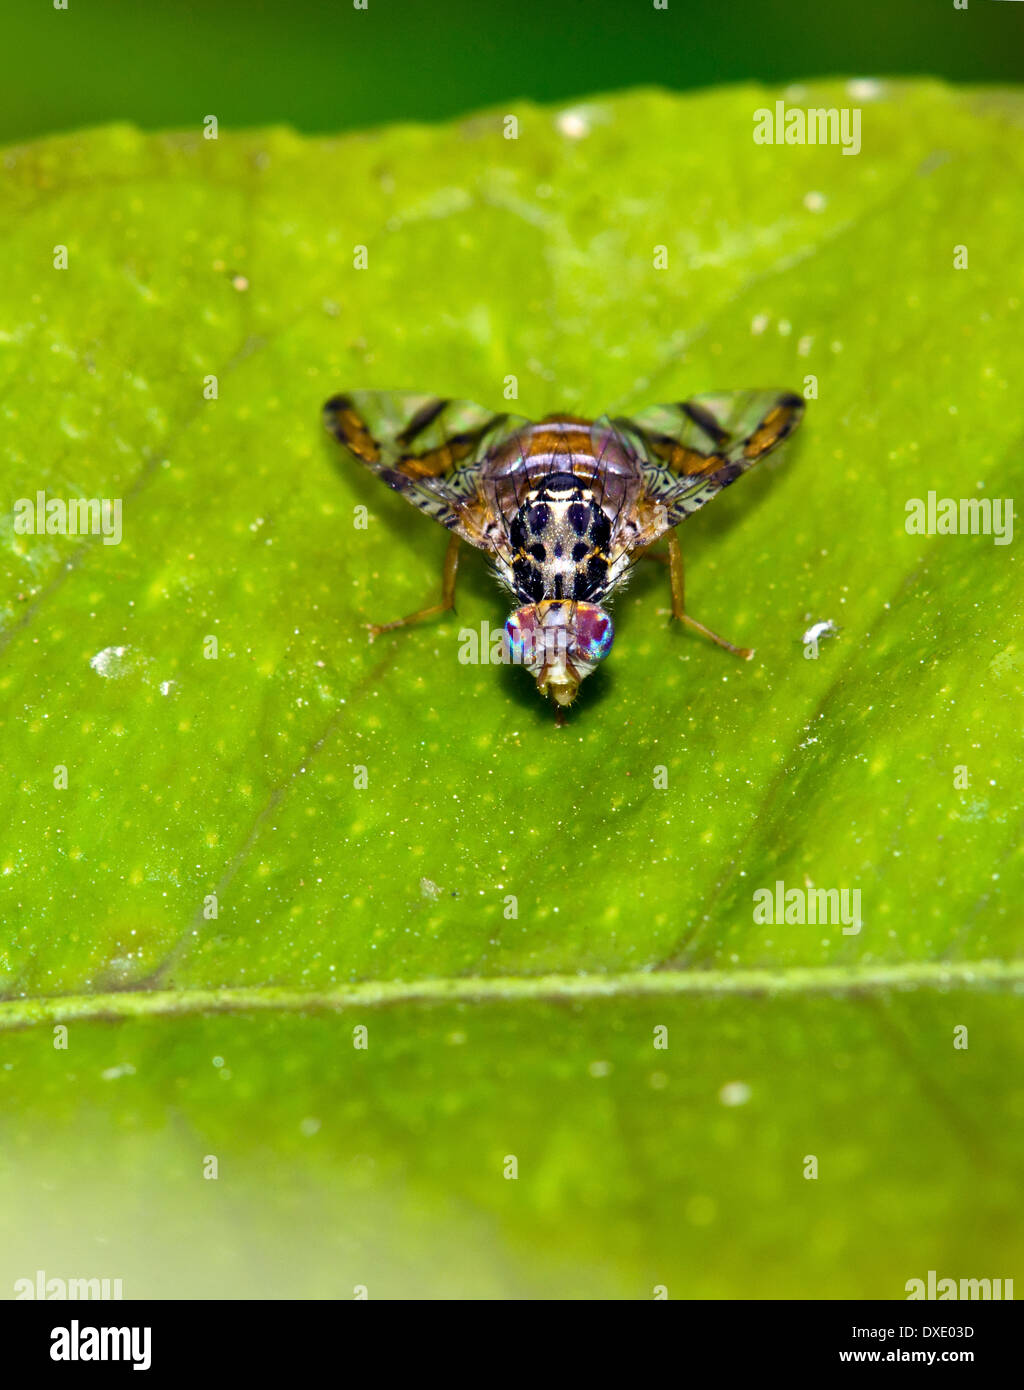 Fruit-fly on leaf Stock Photo